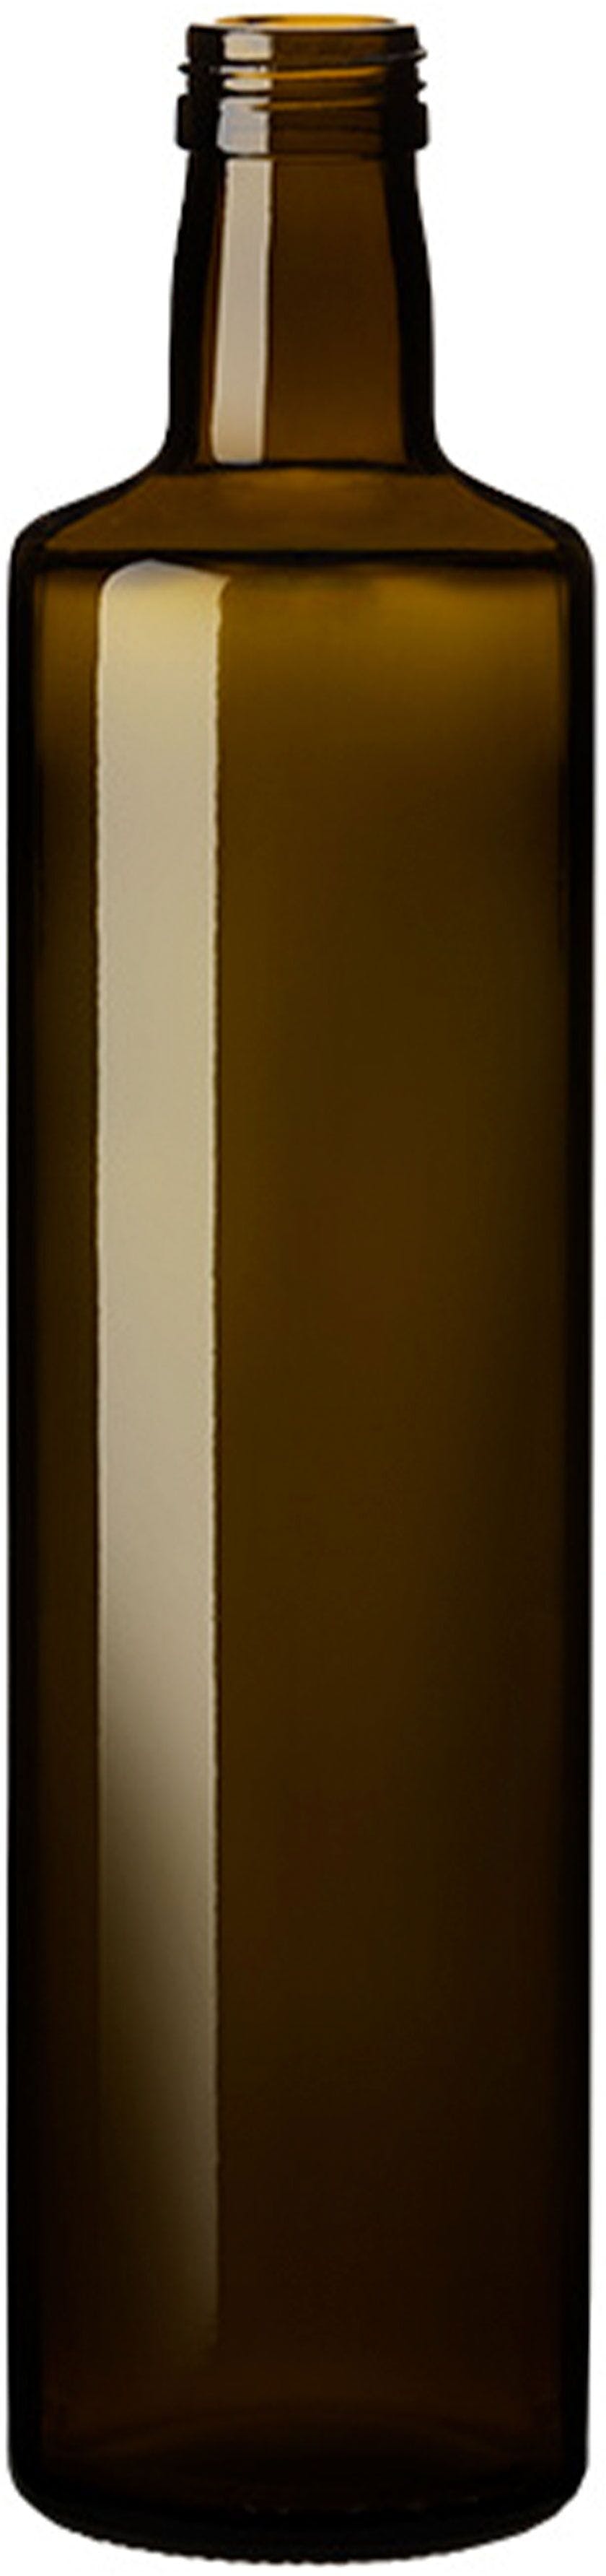 Botella DORICA 750 P 31,5 VQ